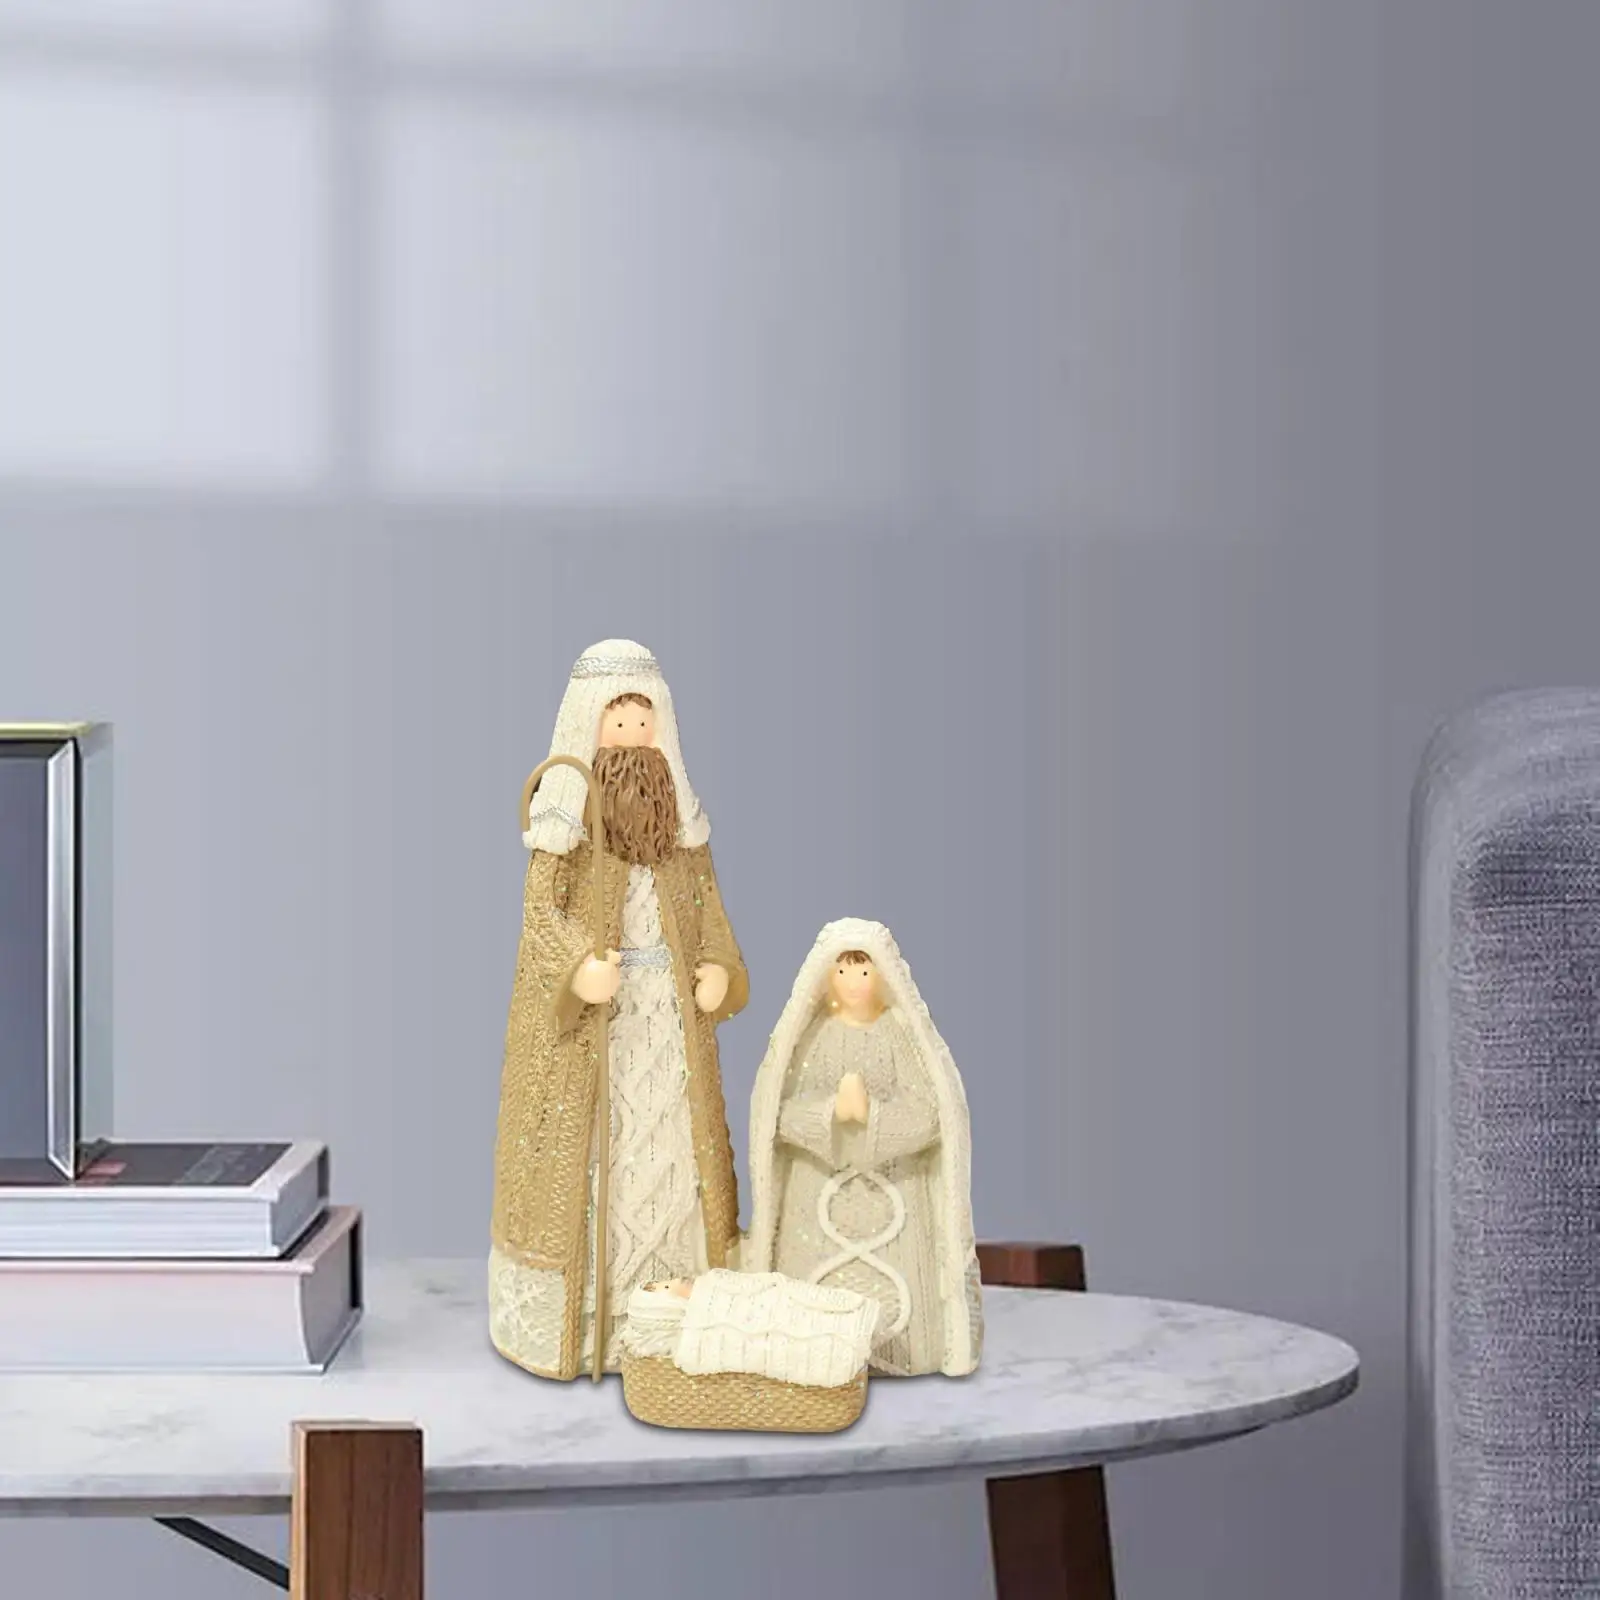 Holy Family Figurine Nativity Scene Christmas for Living Room